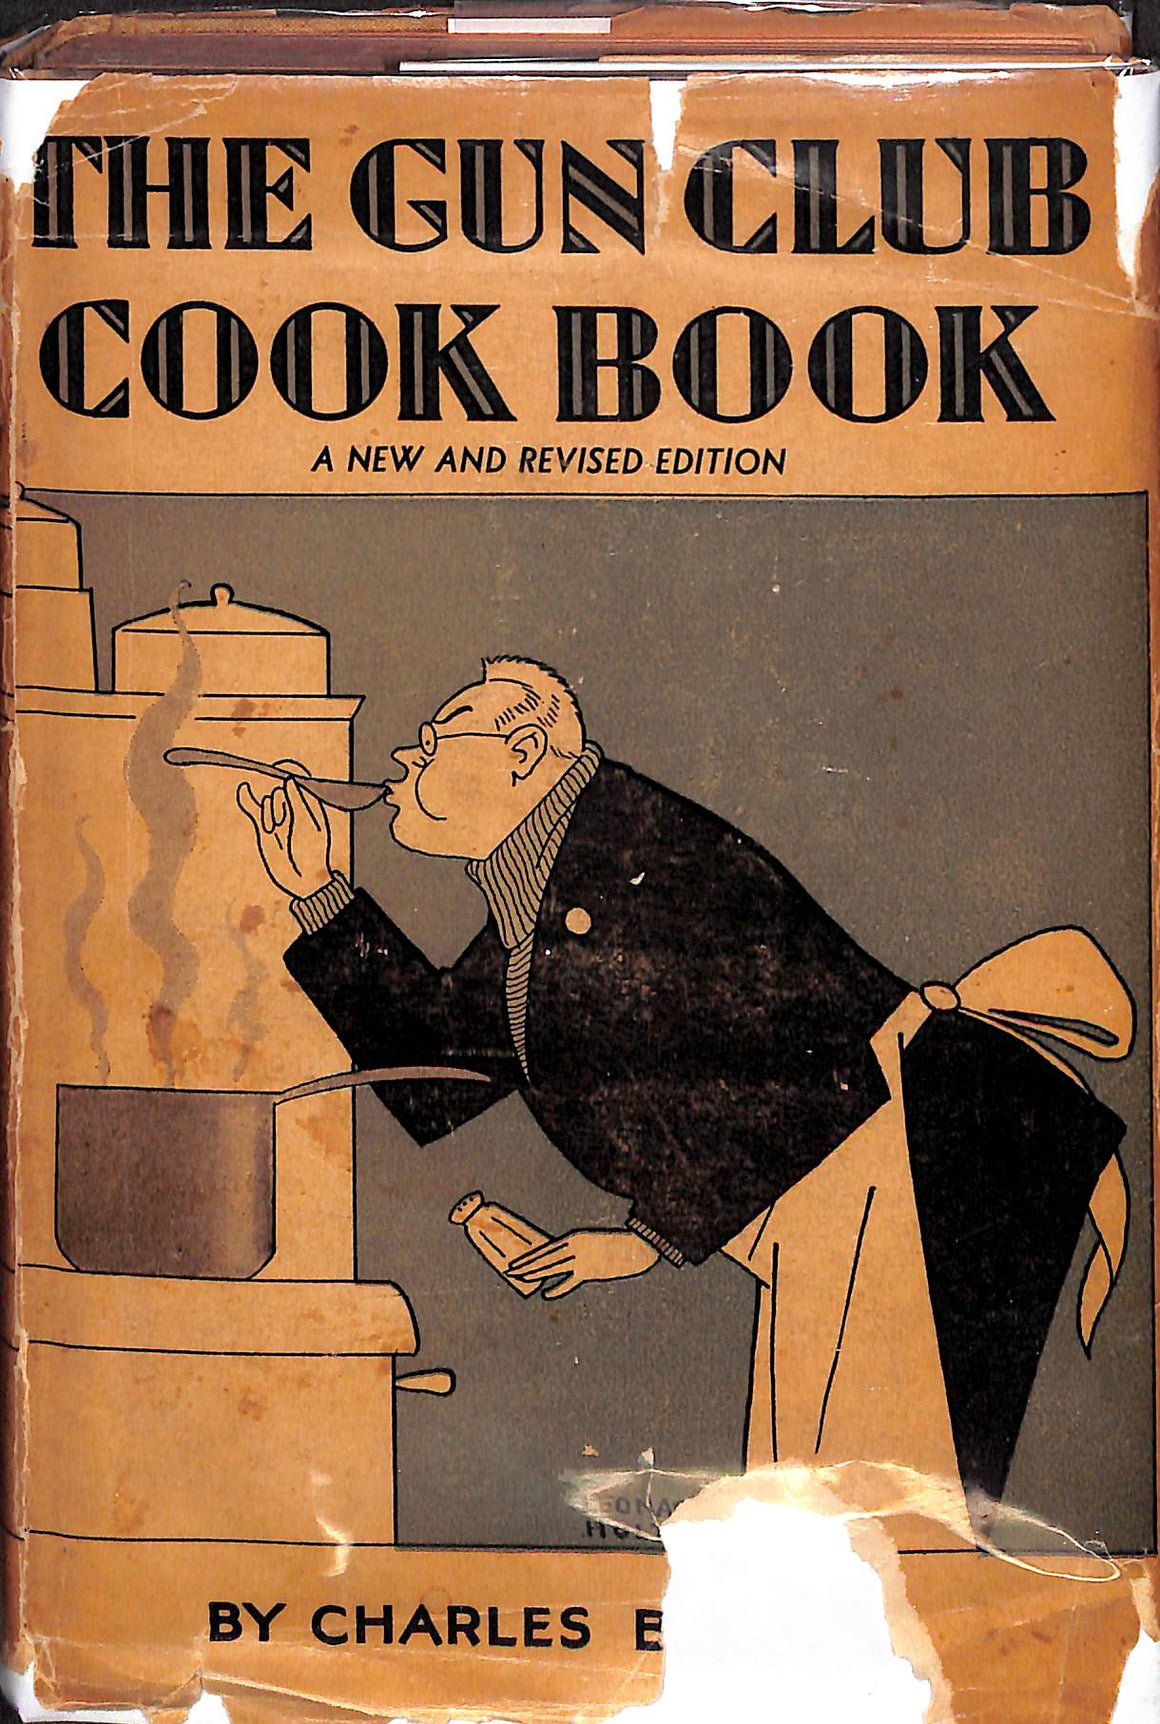 The Gun Club Cook Book